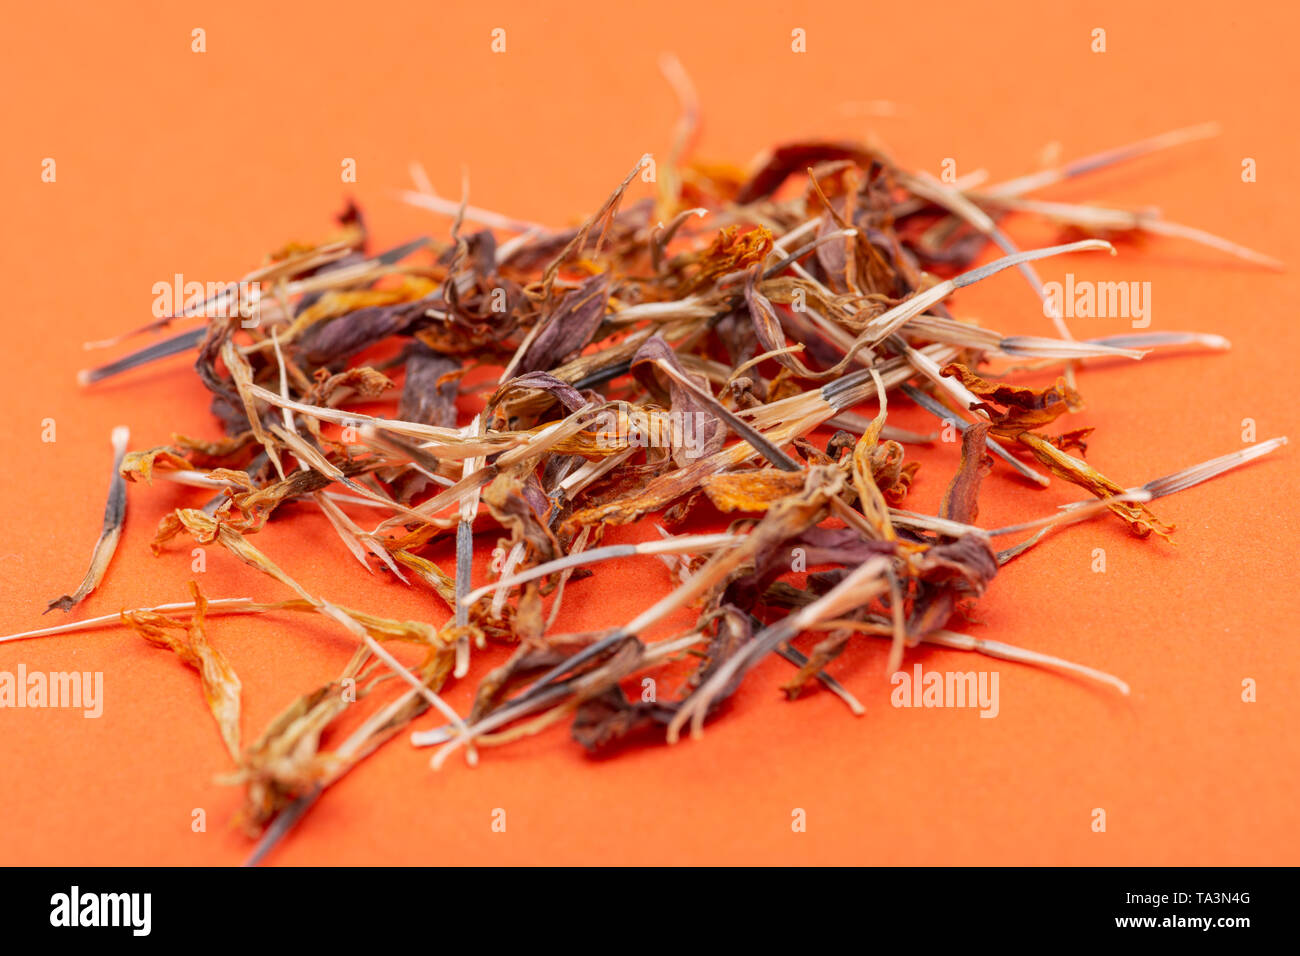 Tas de graines sèches de souci (Calendula Mexicaine, Aztec marigold, marigold africains) sur fond coloré. Tagetes erecta. La famille des marguerites. Banque D'Images